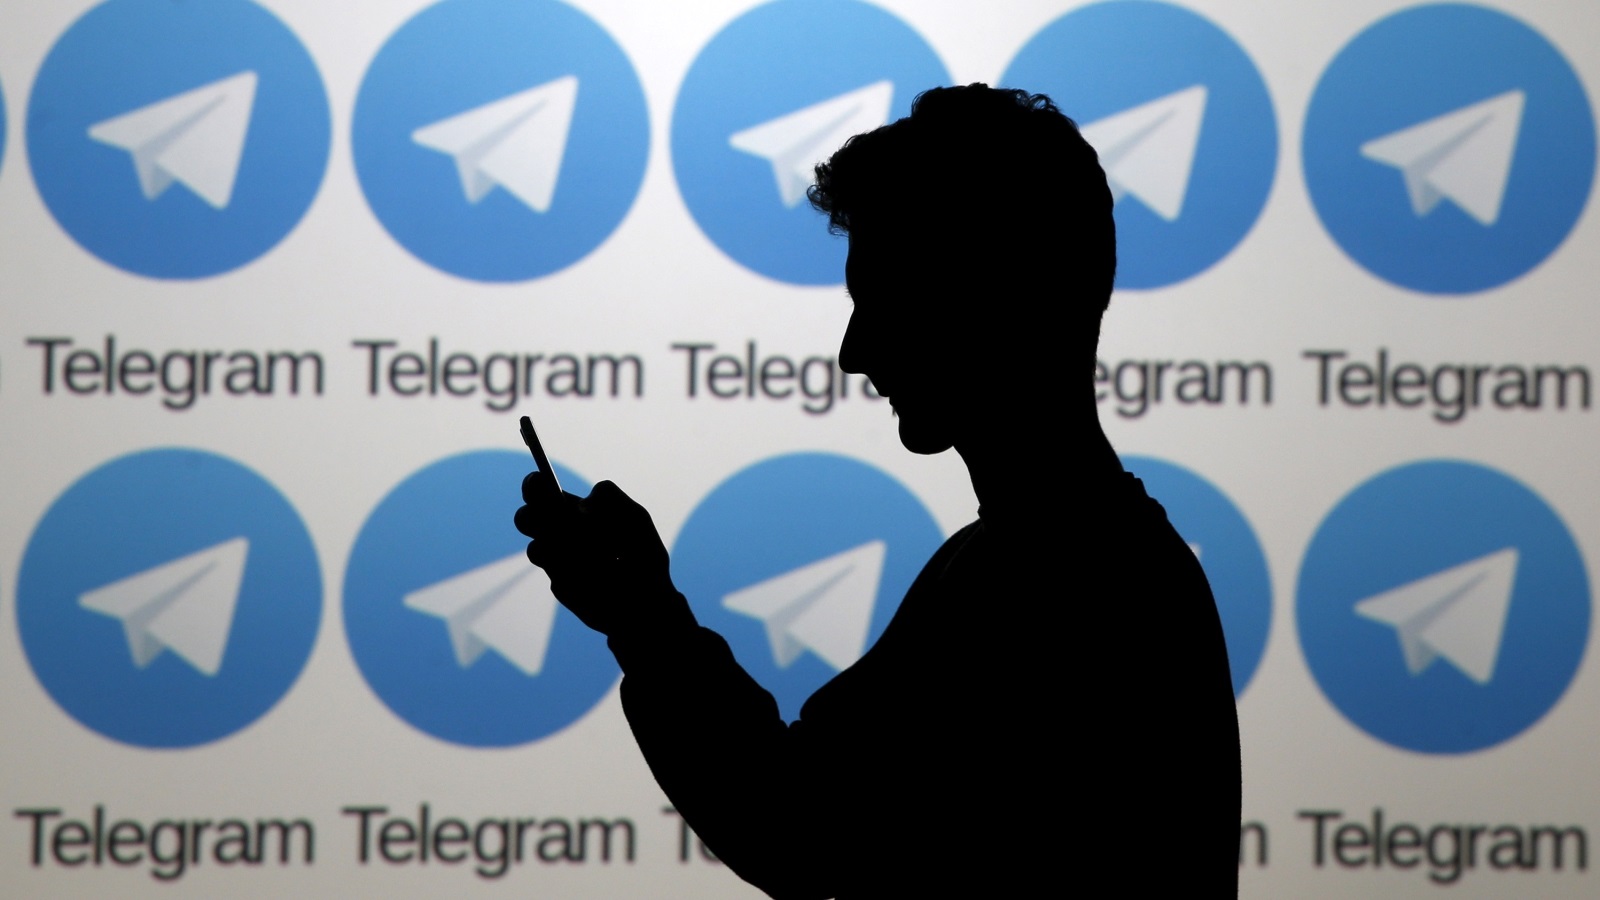 السرية وتشفير البيانات تدخل في جذر تلغرام عبر بروتوكول صمم خصيصا له (رويترز)